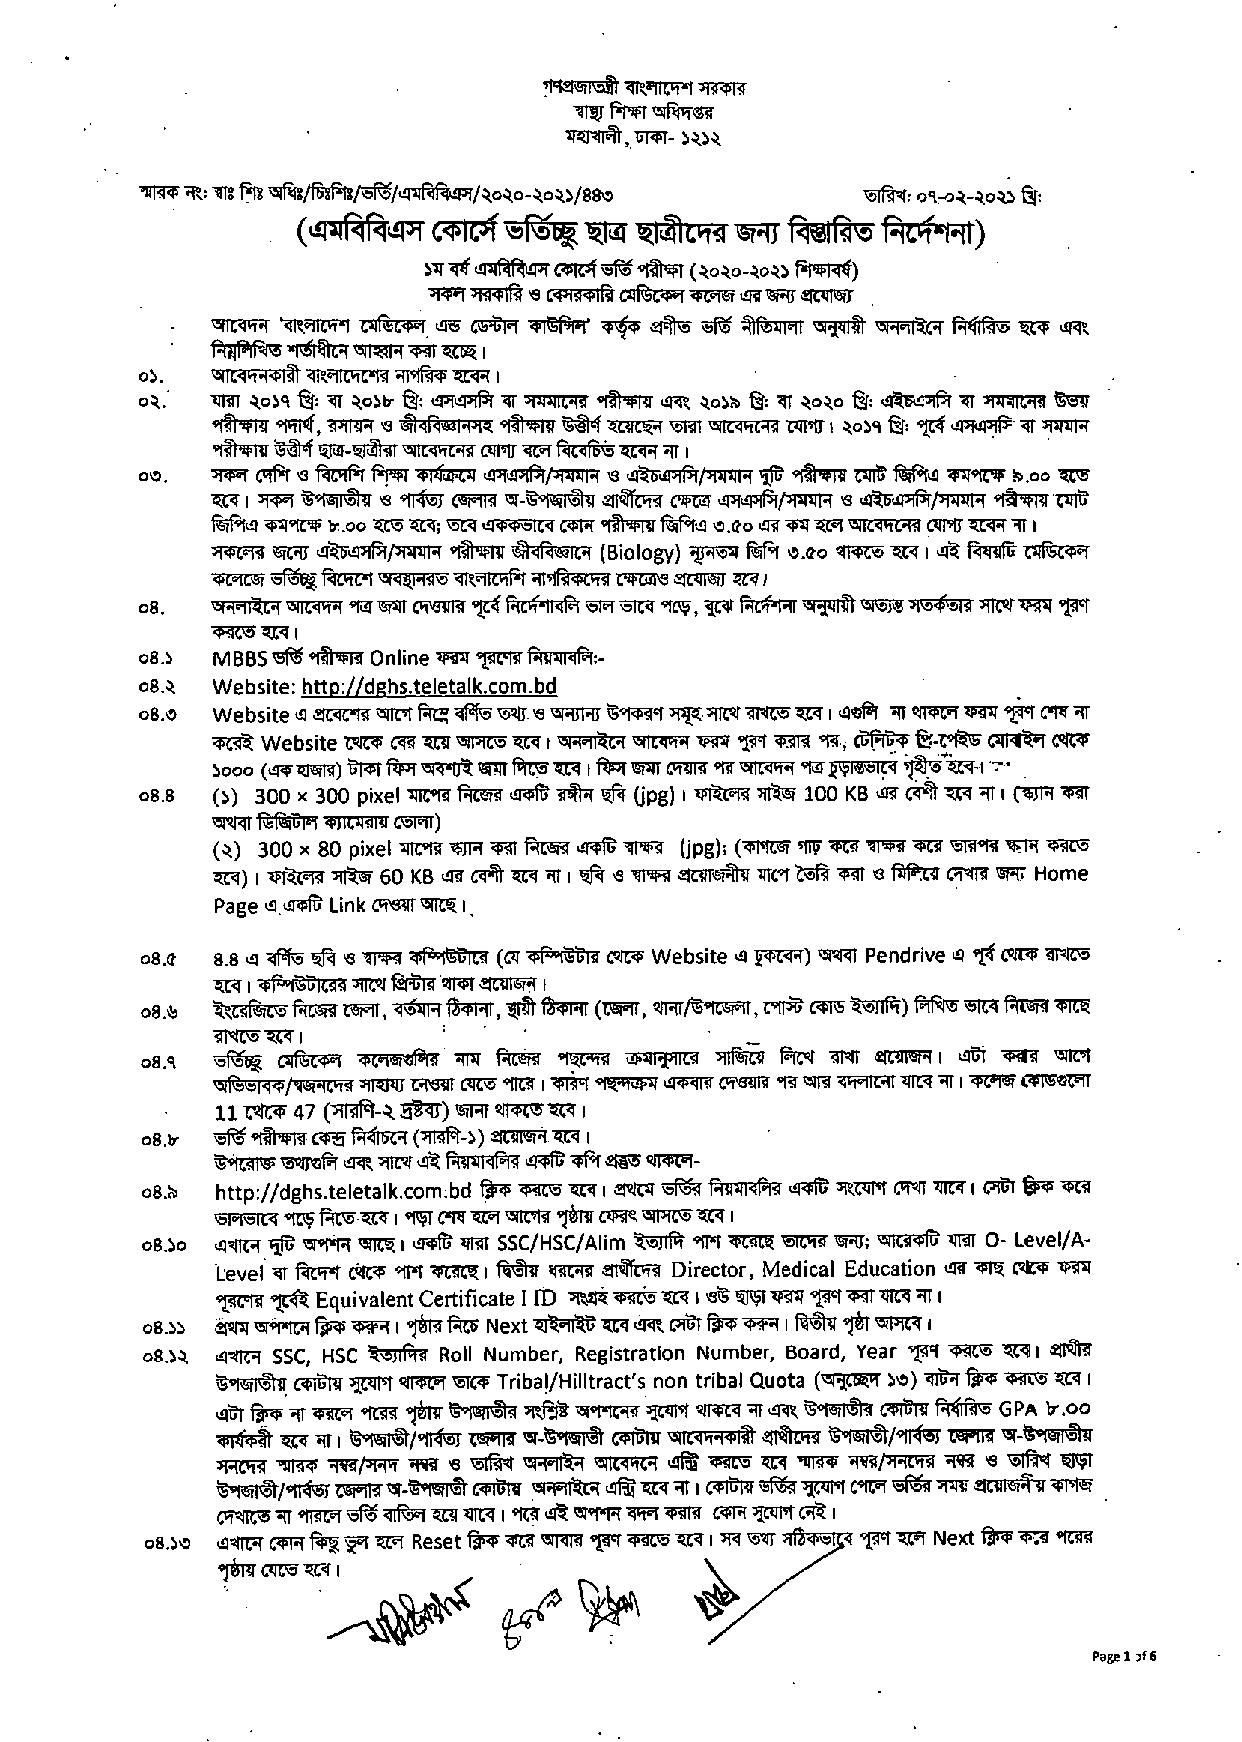 মেডিকেল ভর্তি বিজ্ঞপ্তি ২০২০-২১ PDF Download dghs.gov.bd